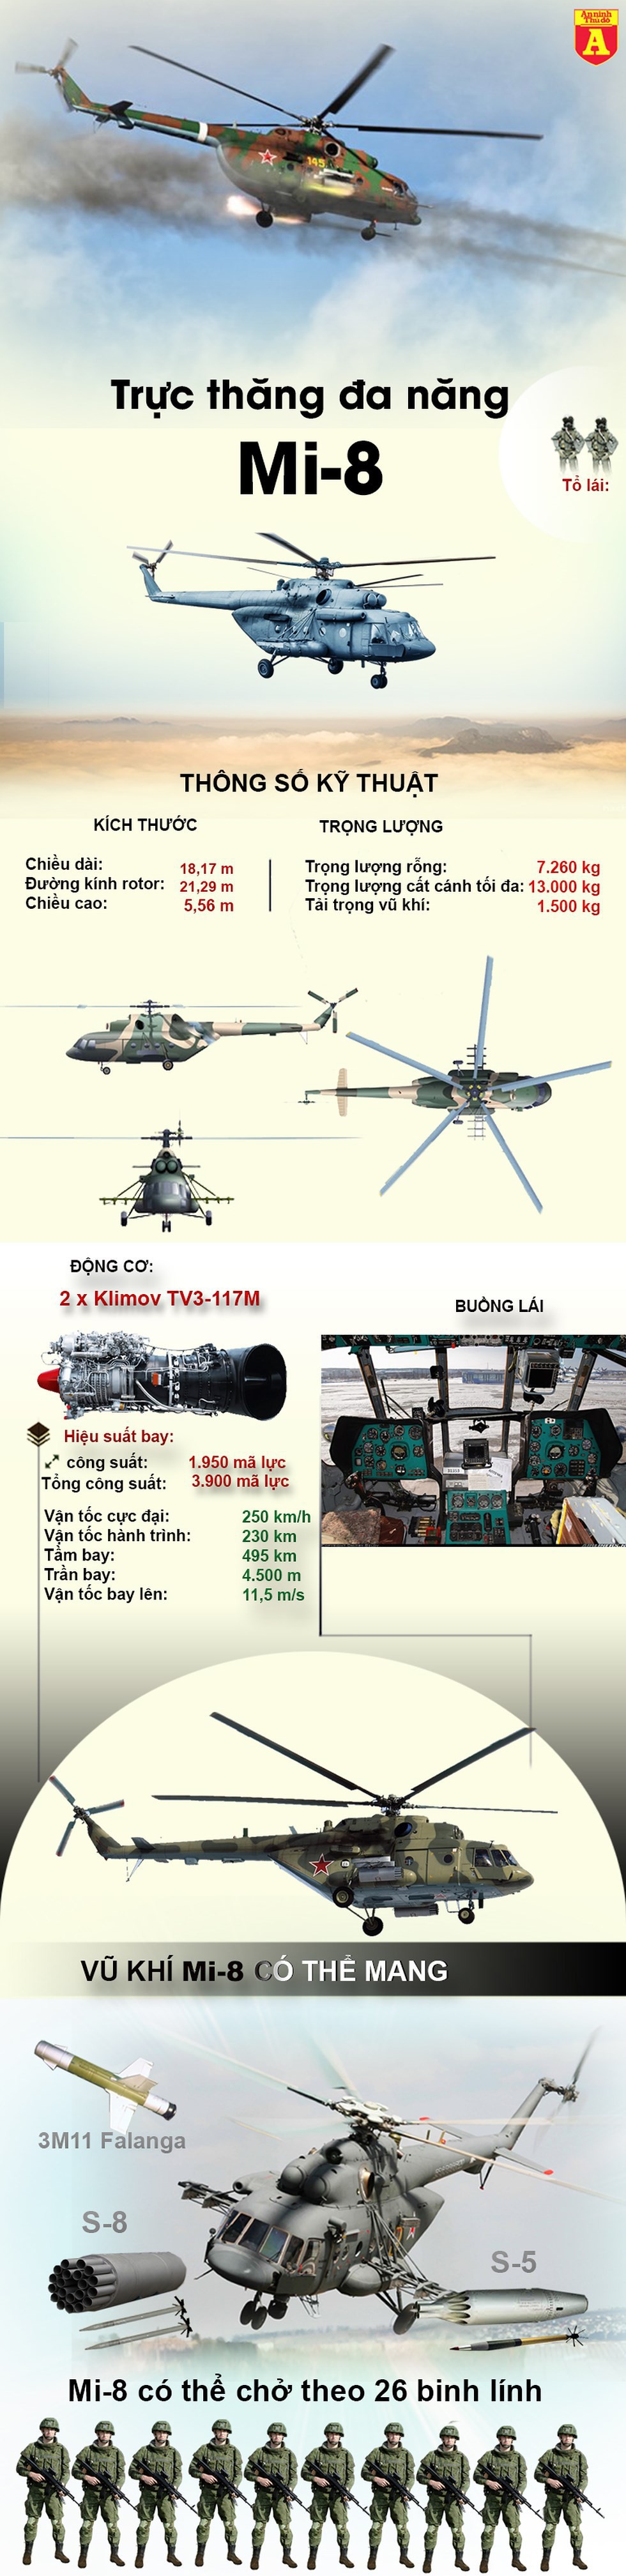 [Infographic] Trực thăng vận tải tốt nhất của Nga gãy càng khi hạ cánh - Ảnh 1